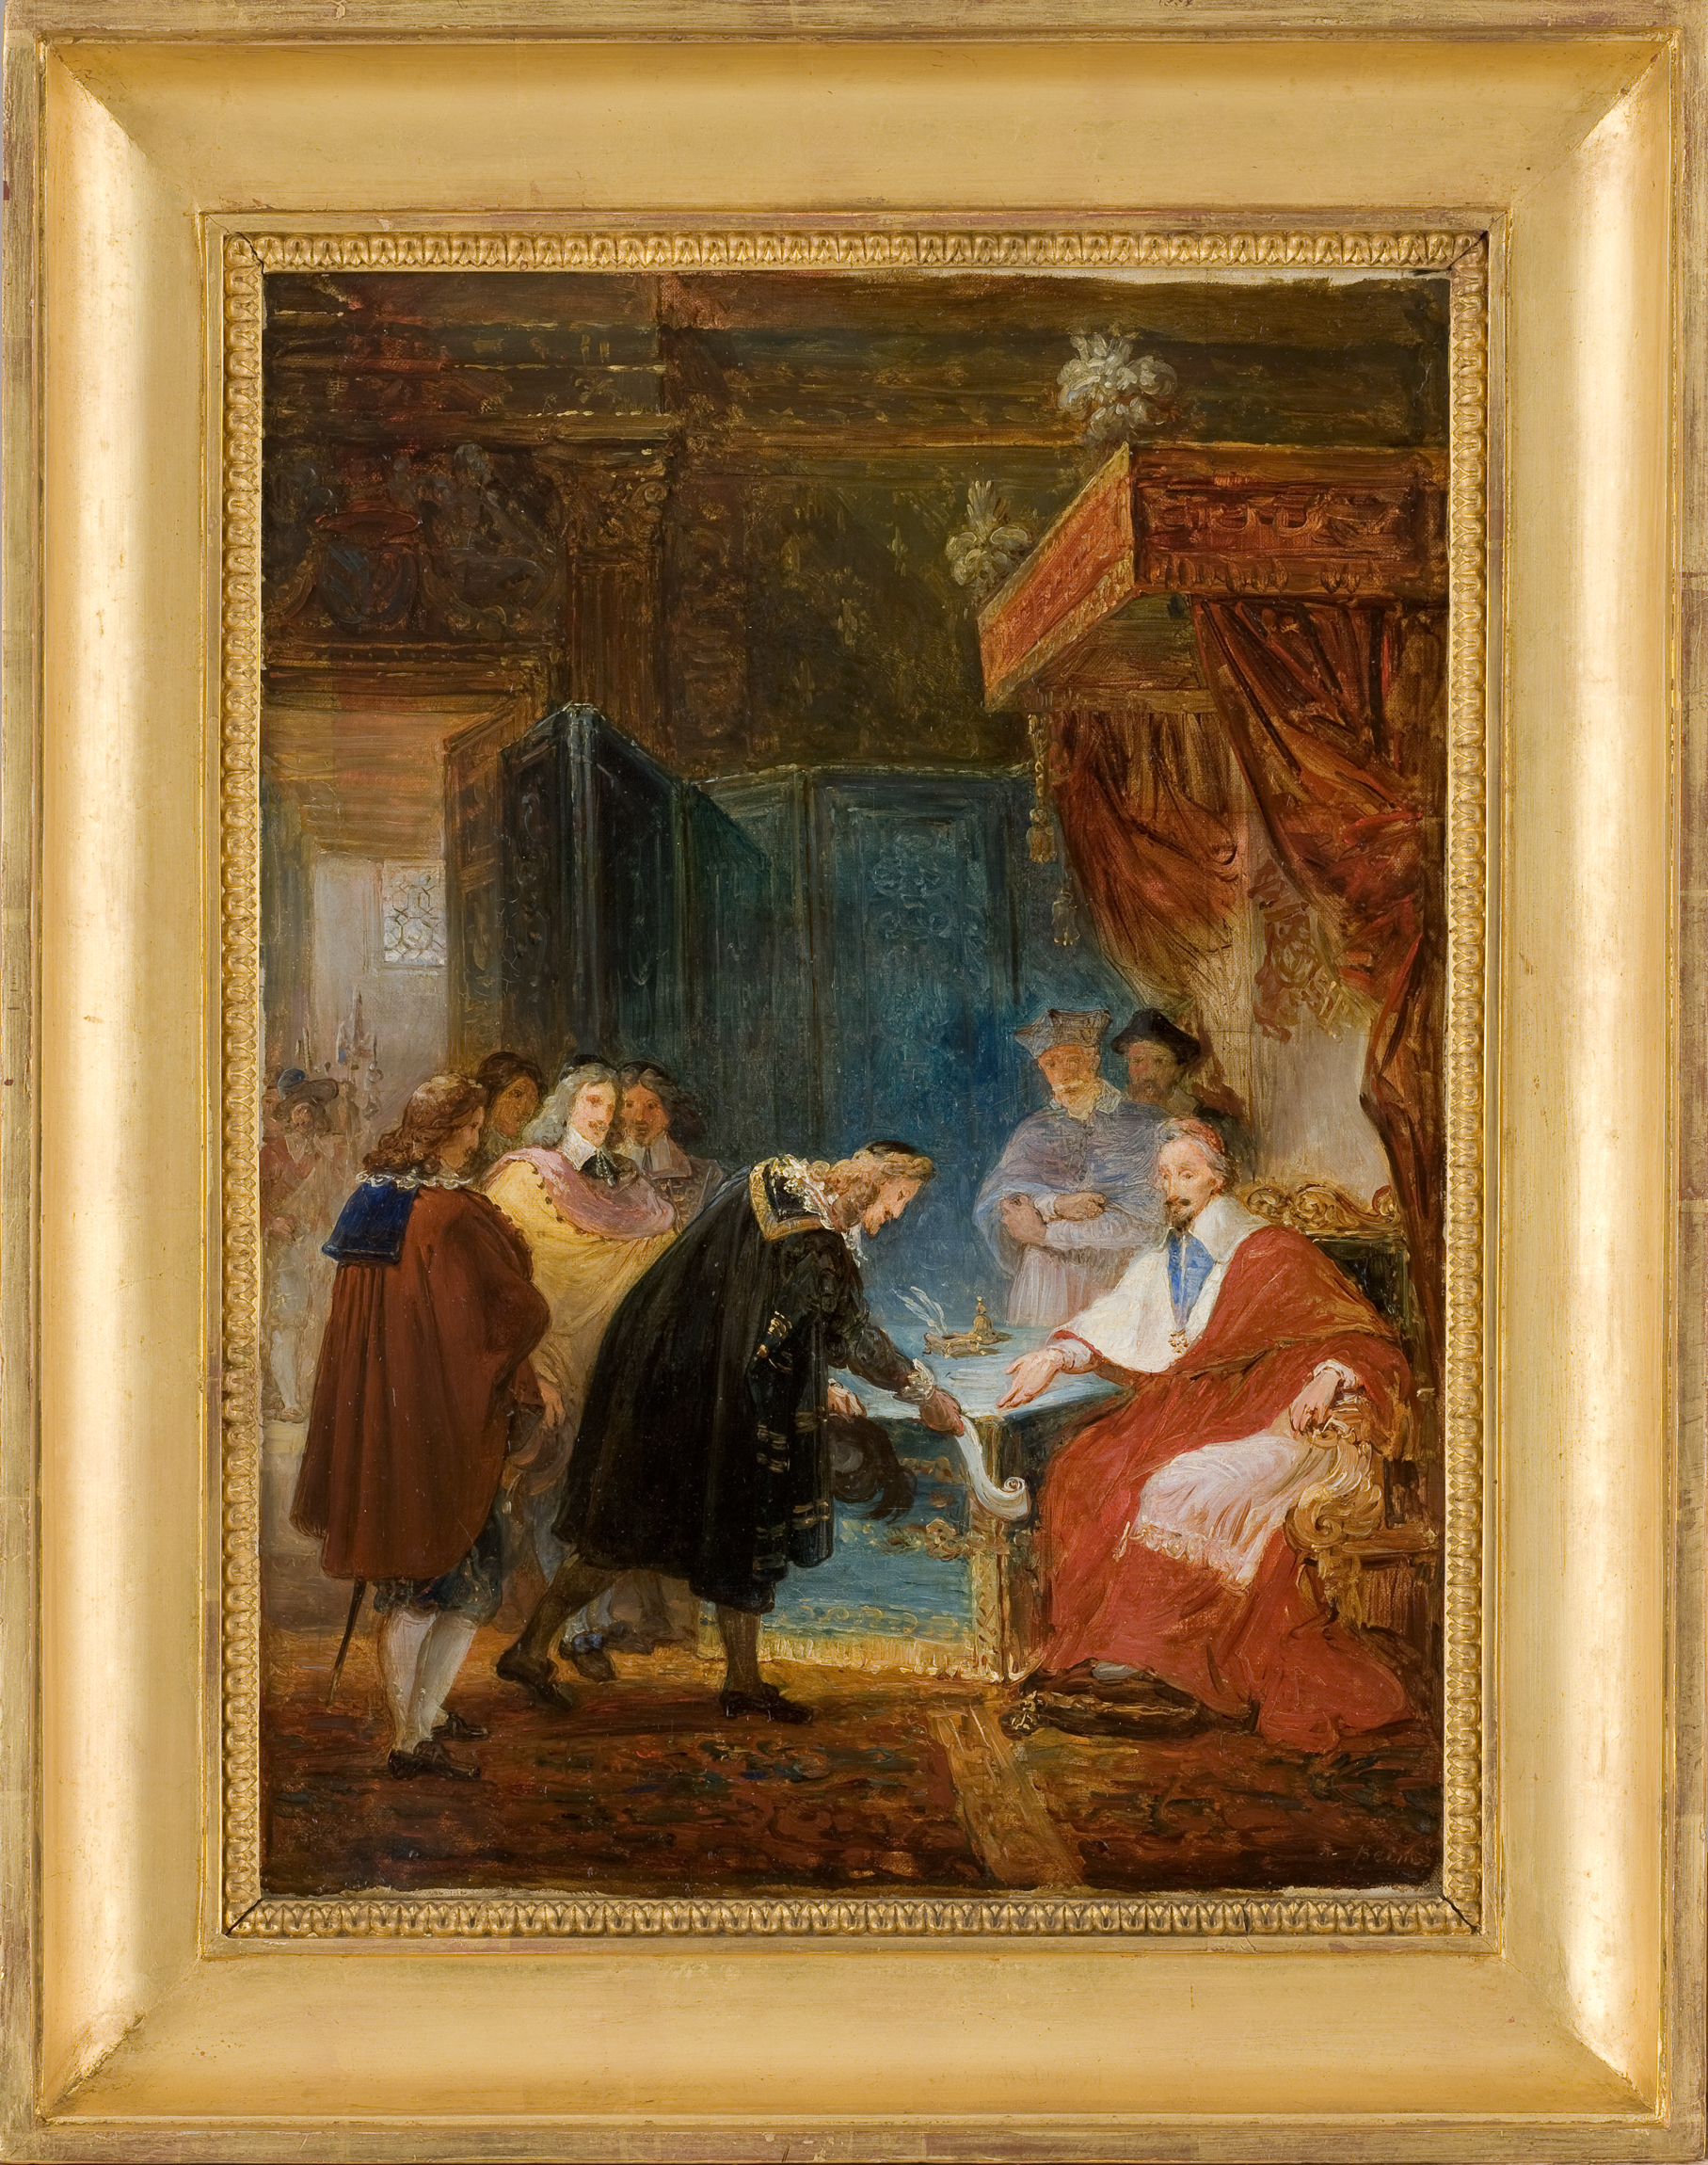 Le Cardinal de Richelieu reçoit les premiers Académiciens qui lui présentent les statuts de l'Académie (esquisse)